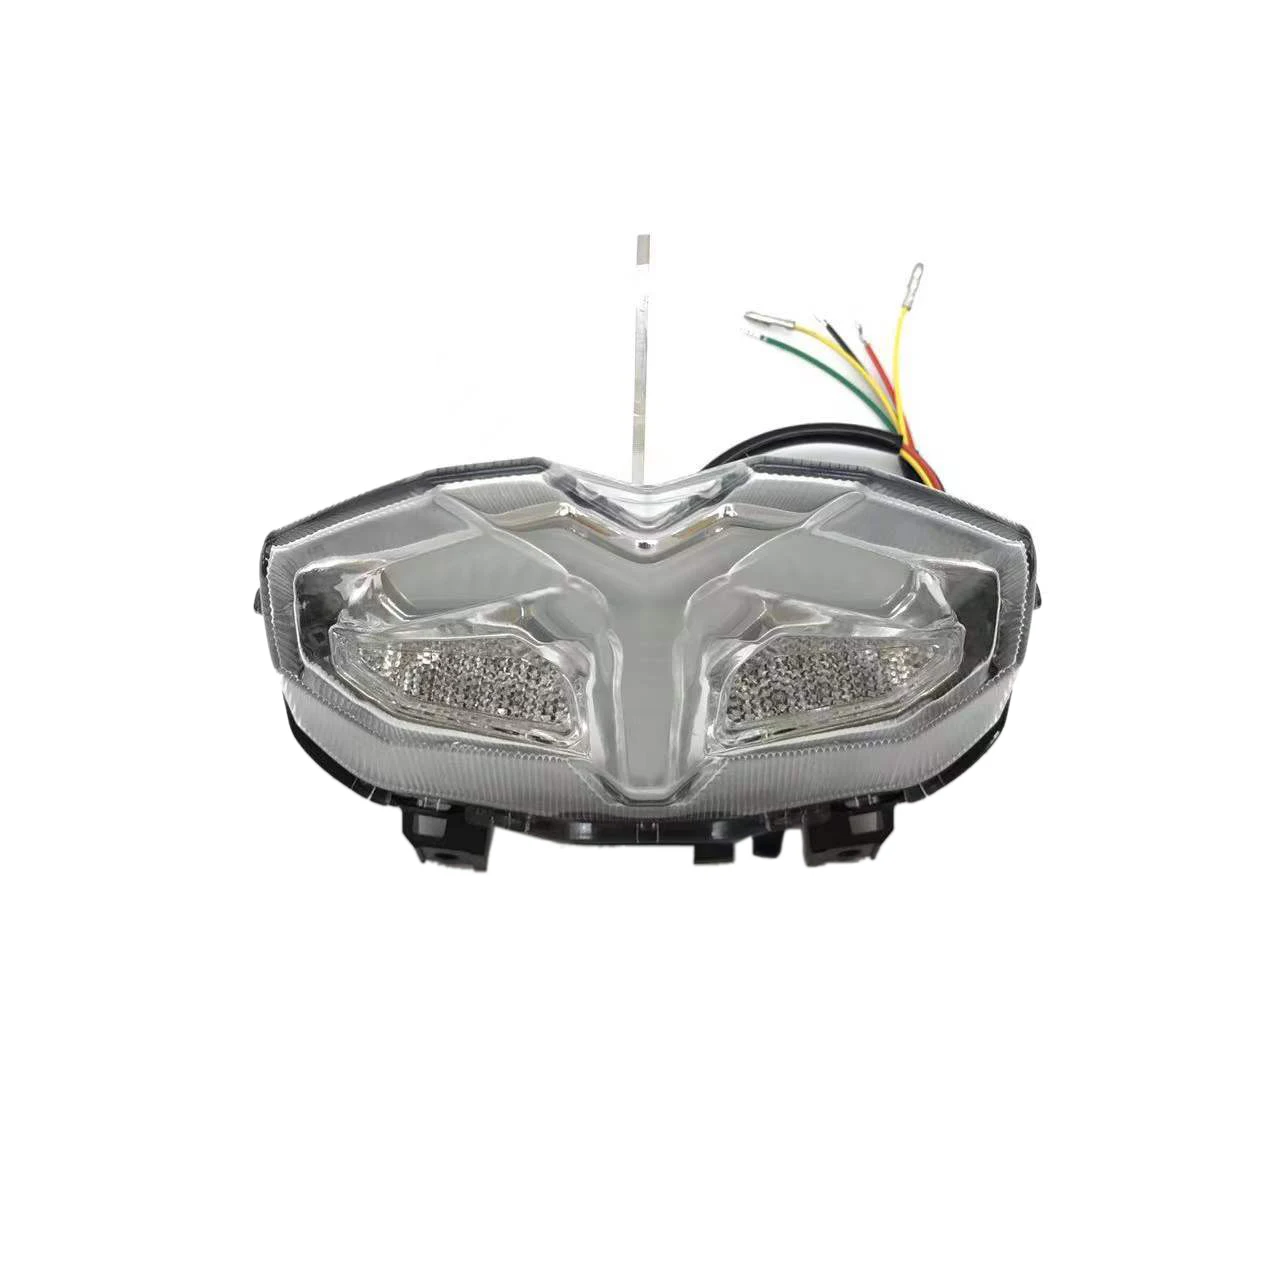 

Задний светодиодный фонарь для мотоцикла YAMAHA MT09 2021 +, сигналы тормоза, Встроенный задний фонарь, мигающий сигнал, прозрачный